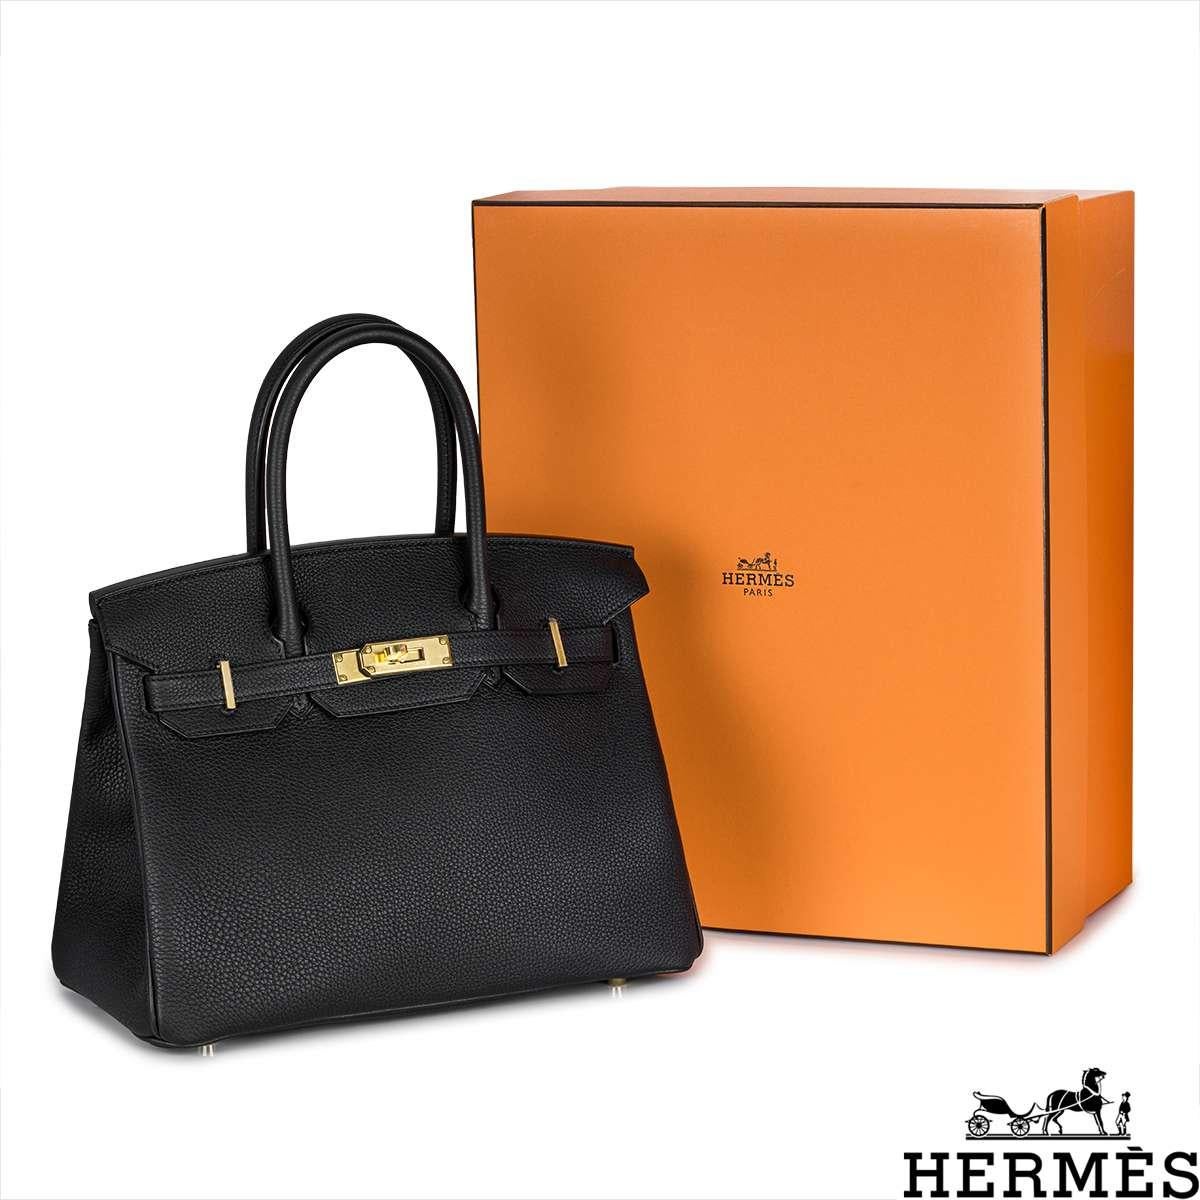 Hermès Birkin 30cm Noir Veau Togo GHW 7